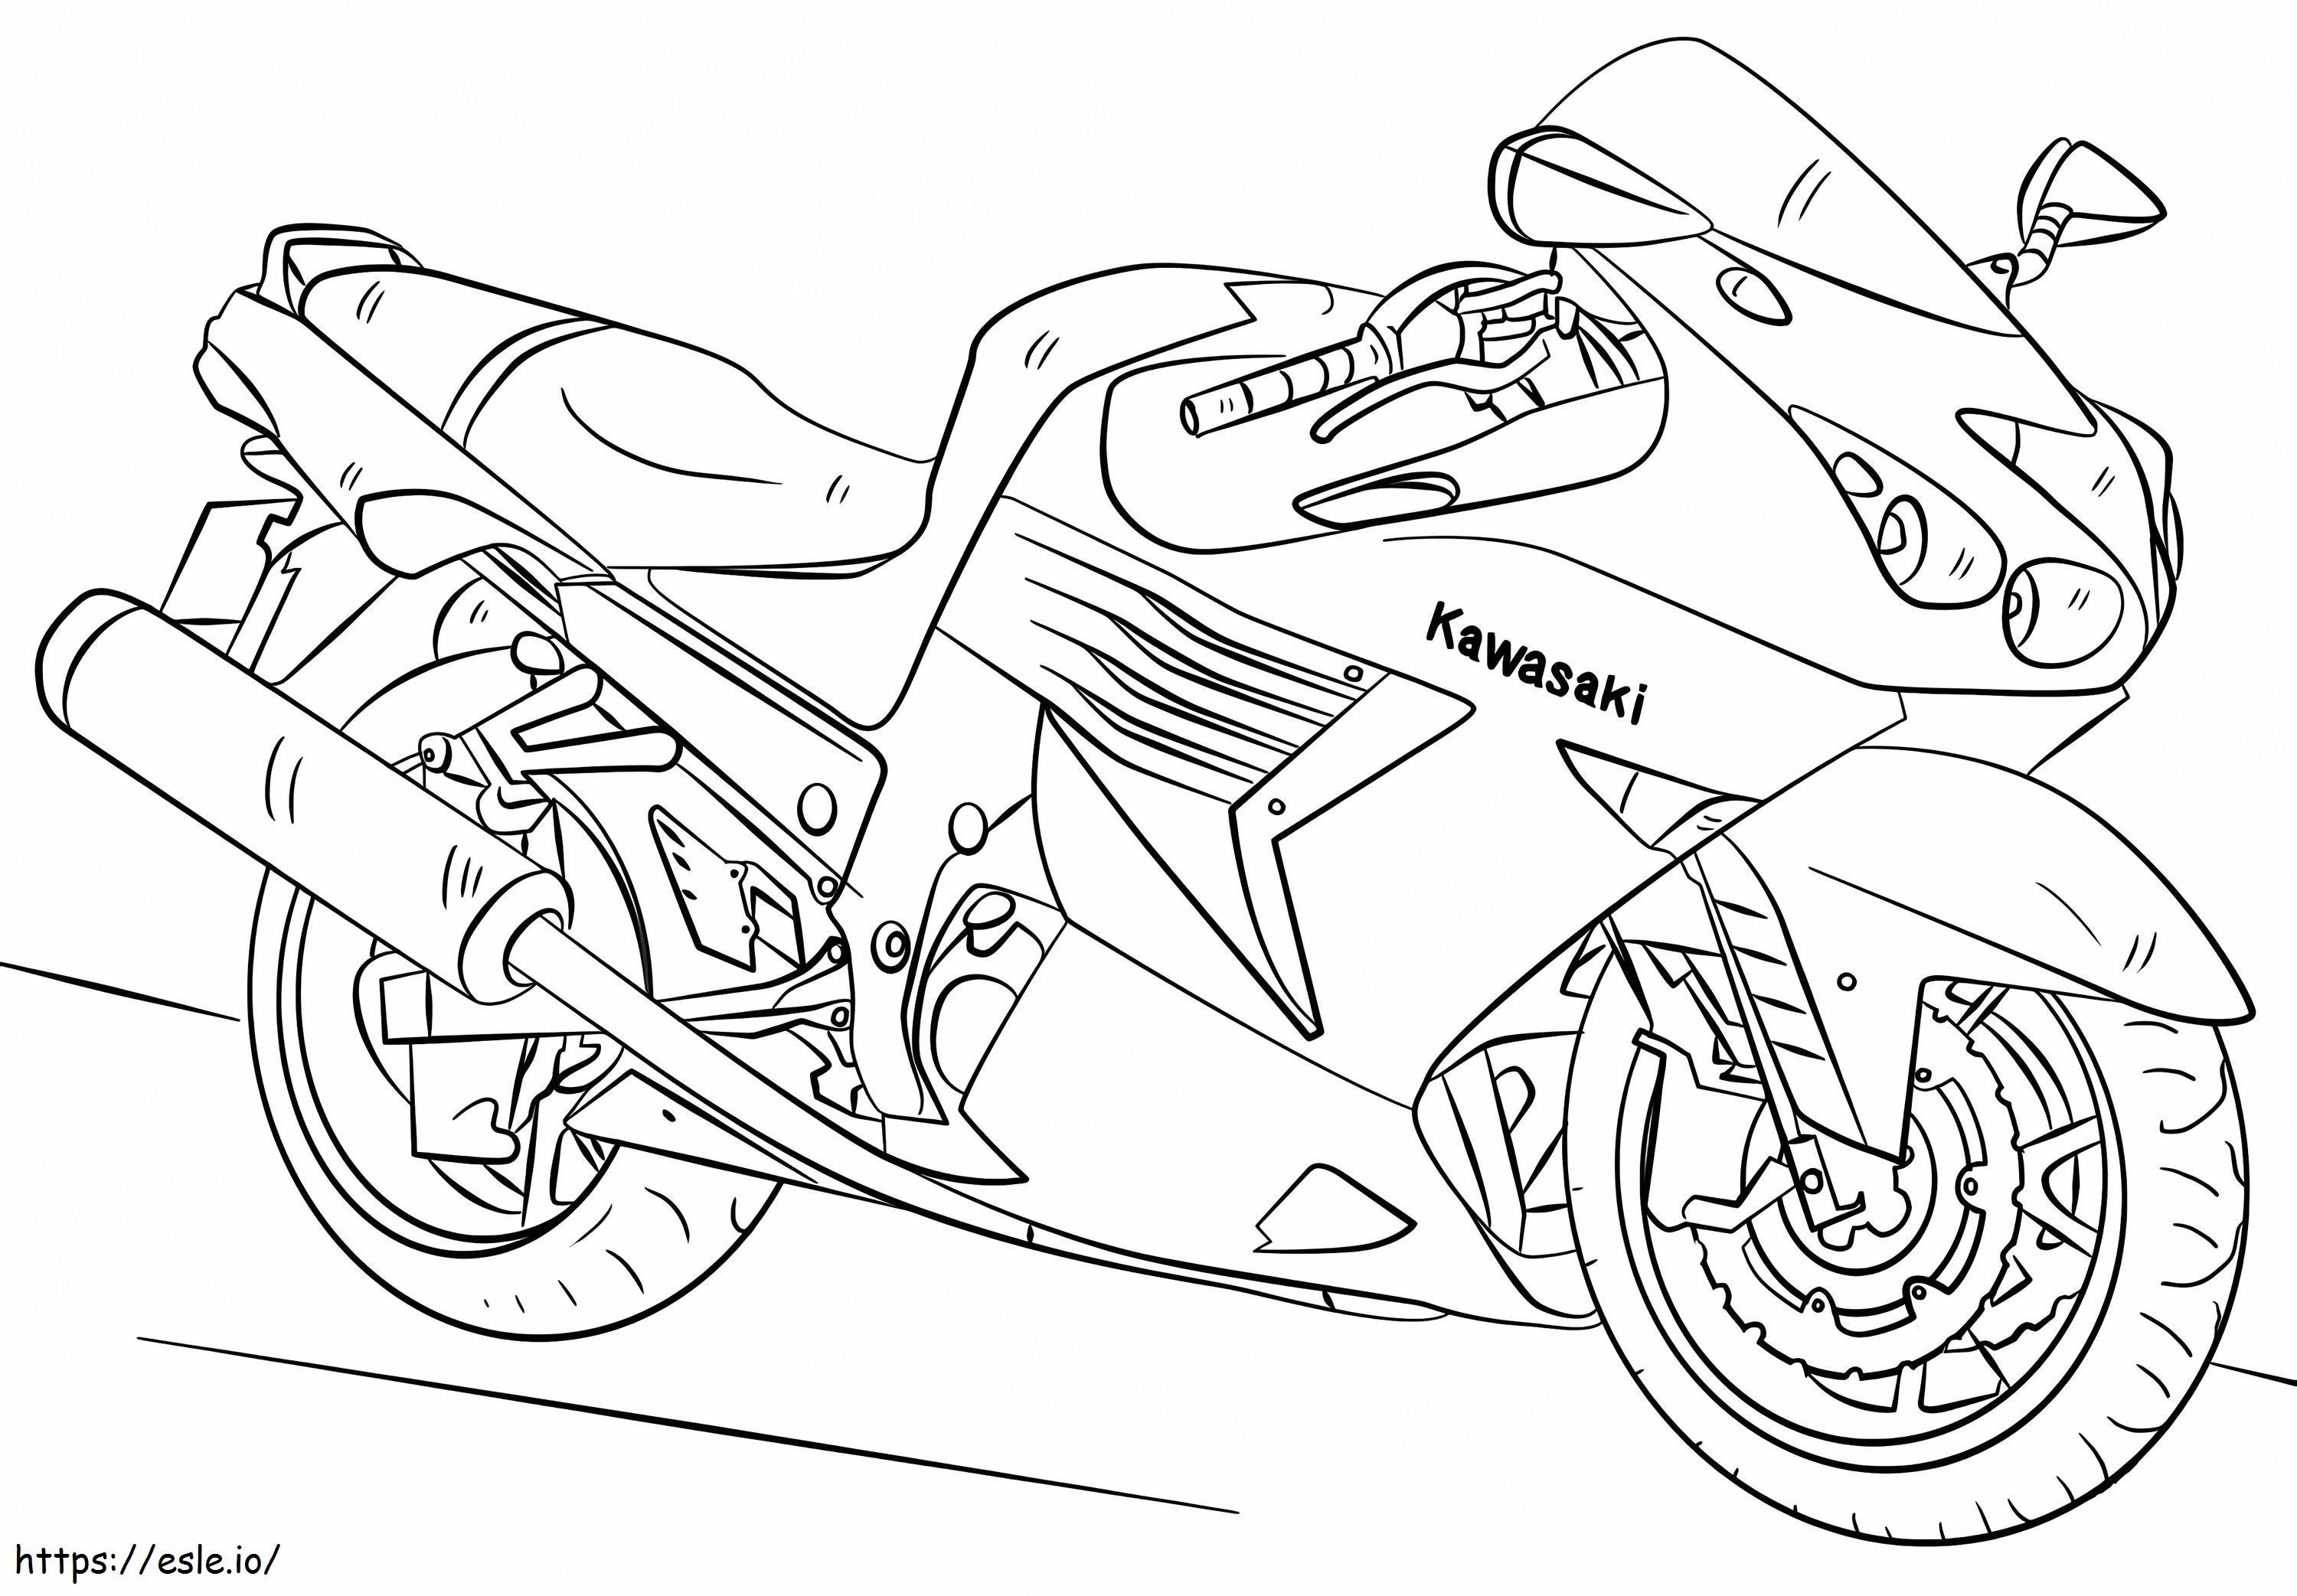 Kawasaki Motorcycle coloring page